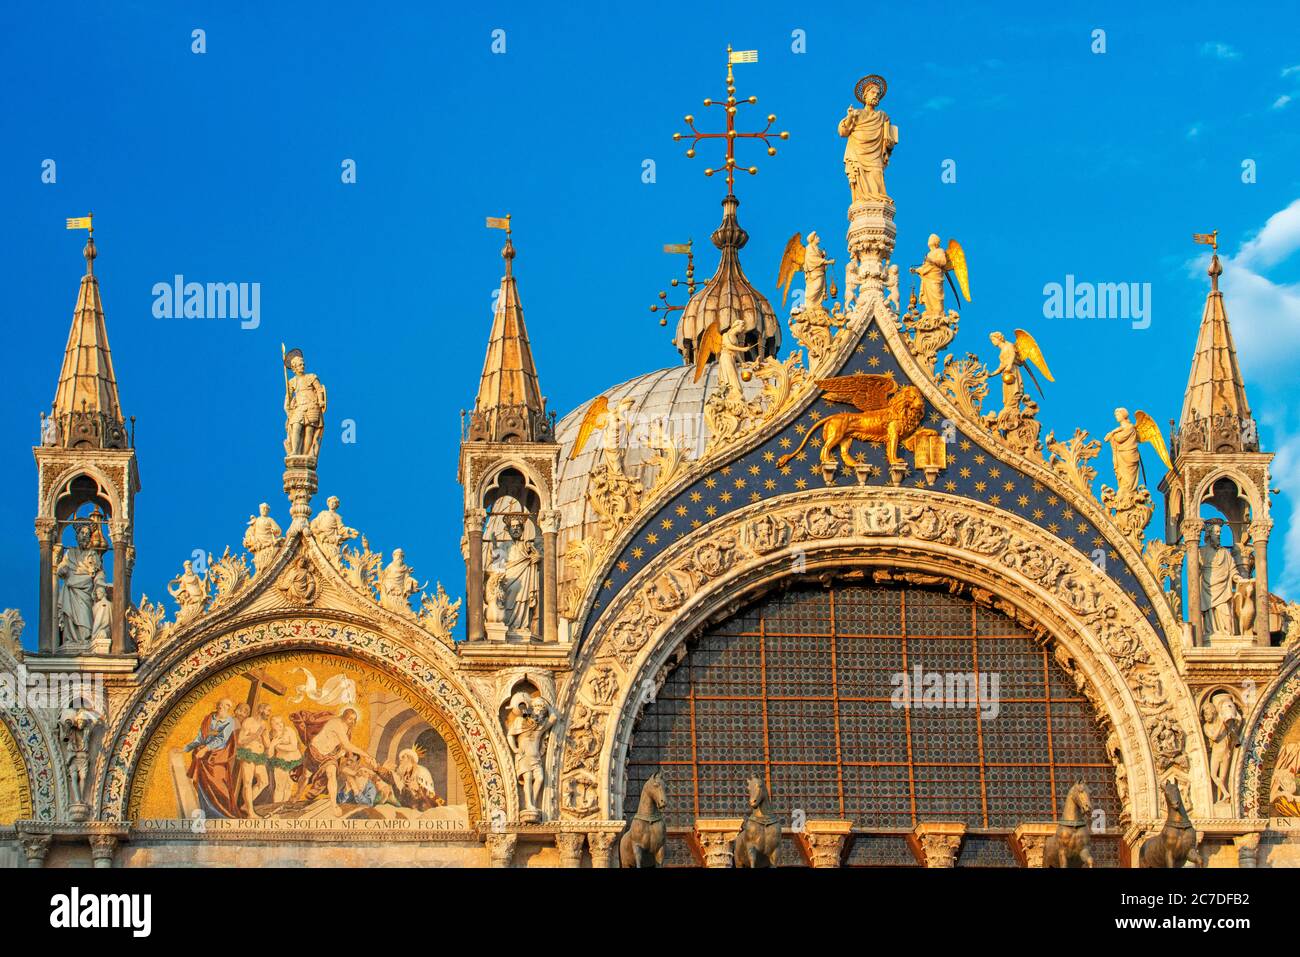 Basilica San Marco riflessa in acqua alta in Piazza San Marco al crepuscolo durante il tramonto, Venezia, Italia con sfocatura motiva sulla folla dei turisti Foto Stock